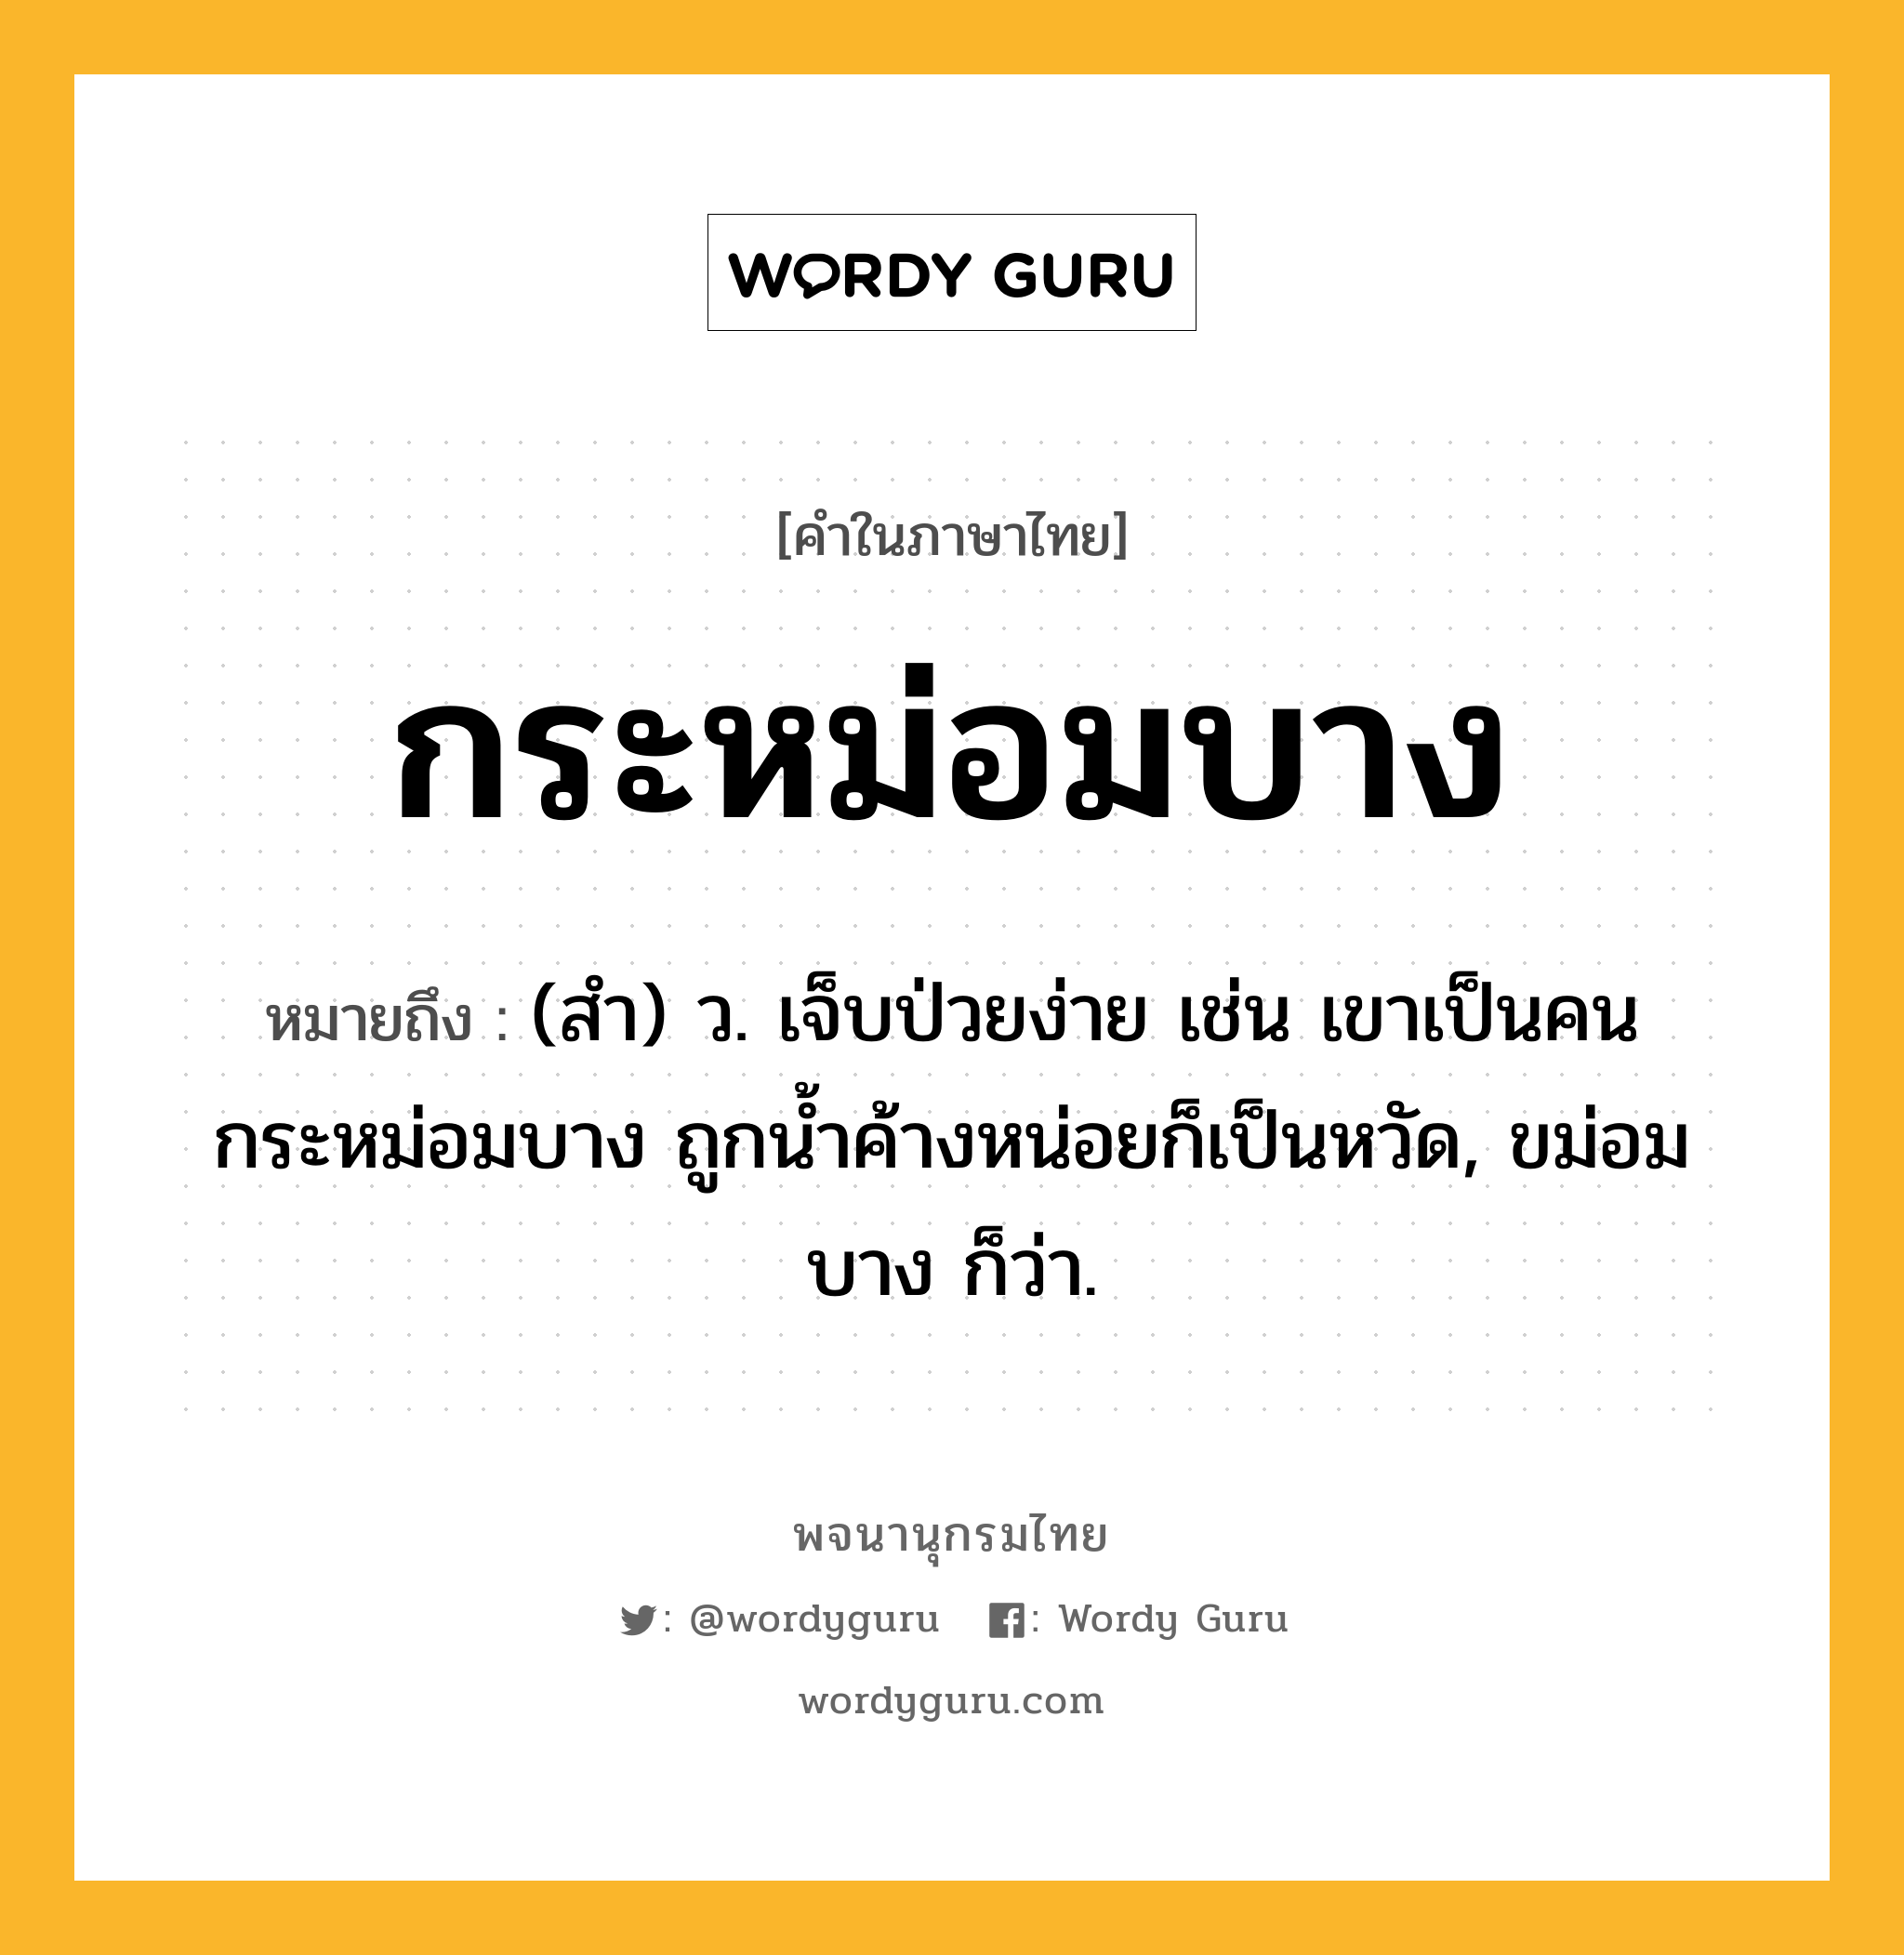 กระหม่อมบาง ความหมาย หมายถึงอะไร?, คำในภาษาไทย กระหม่อมบาง หมายถึง (สํา) ว. เจ็บป่วยง่าย เช่น เขาเป็นคนกระหม่อมบาง ถูกนํ้าค้างหน่อยก็เป็นหวัด, ขม่อมบาง ก็ว่า.